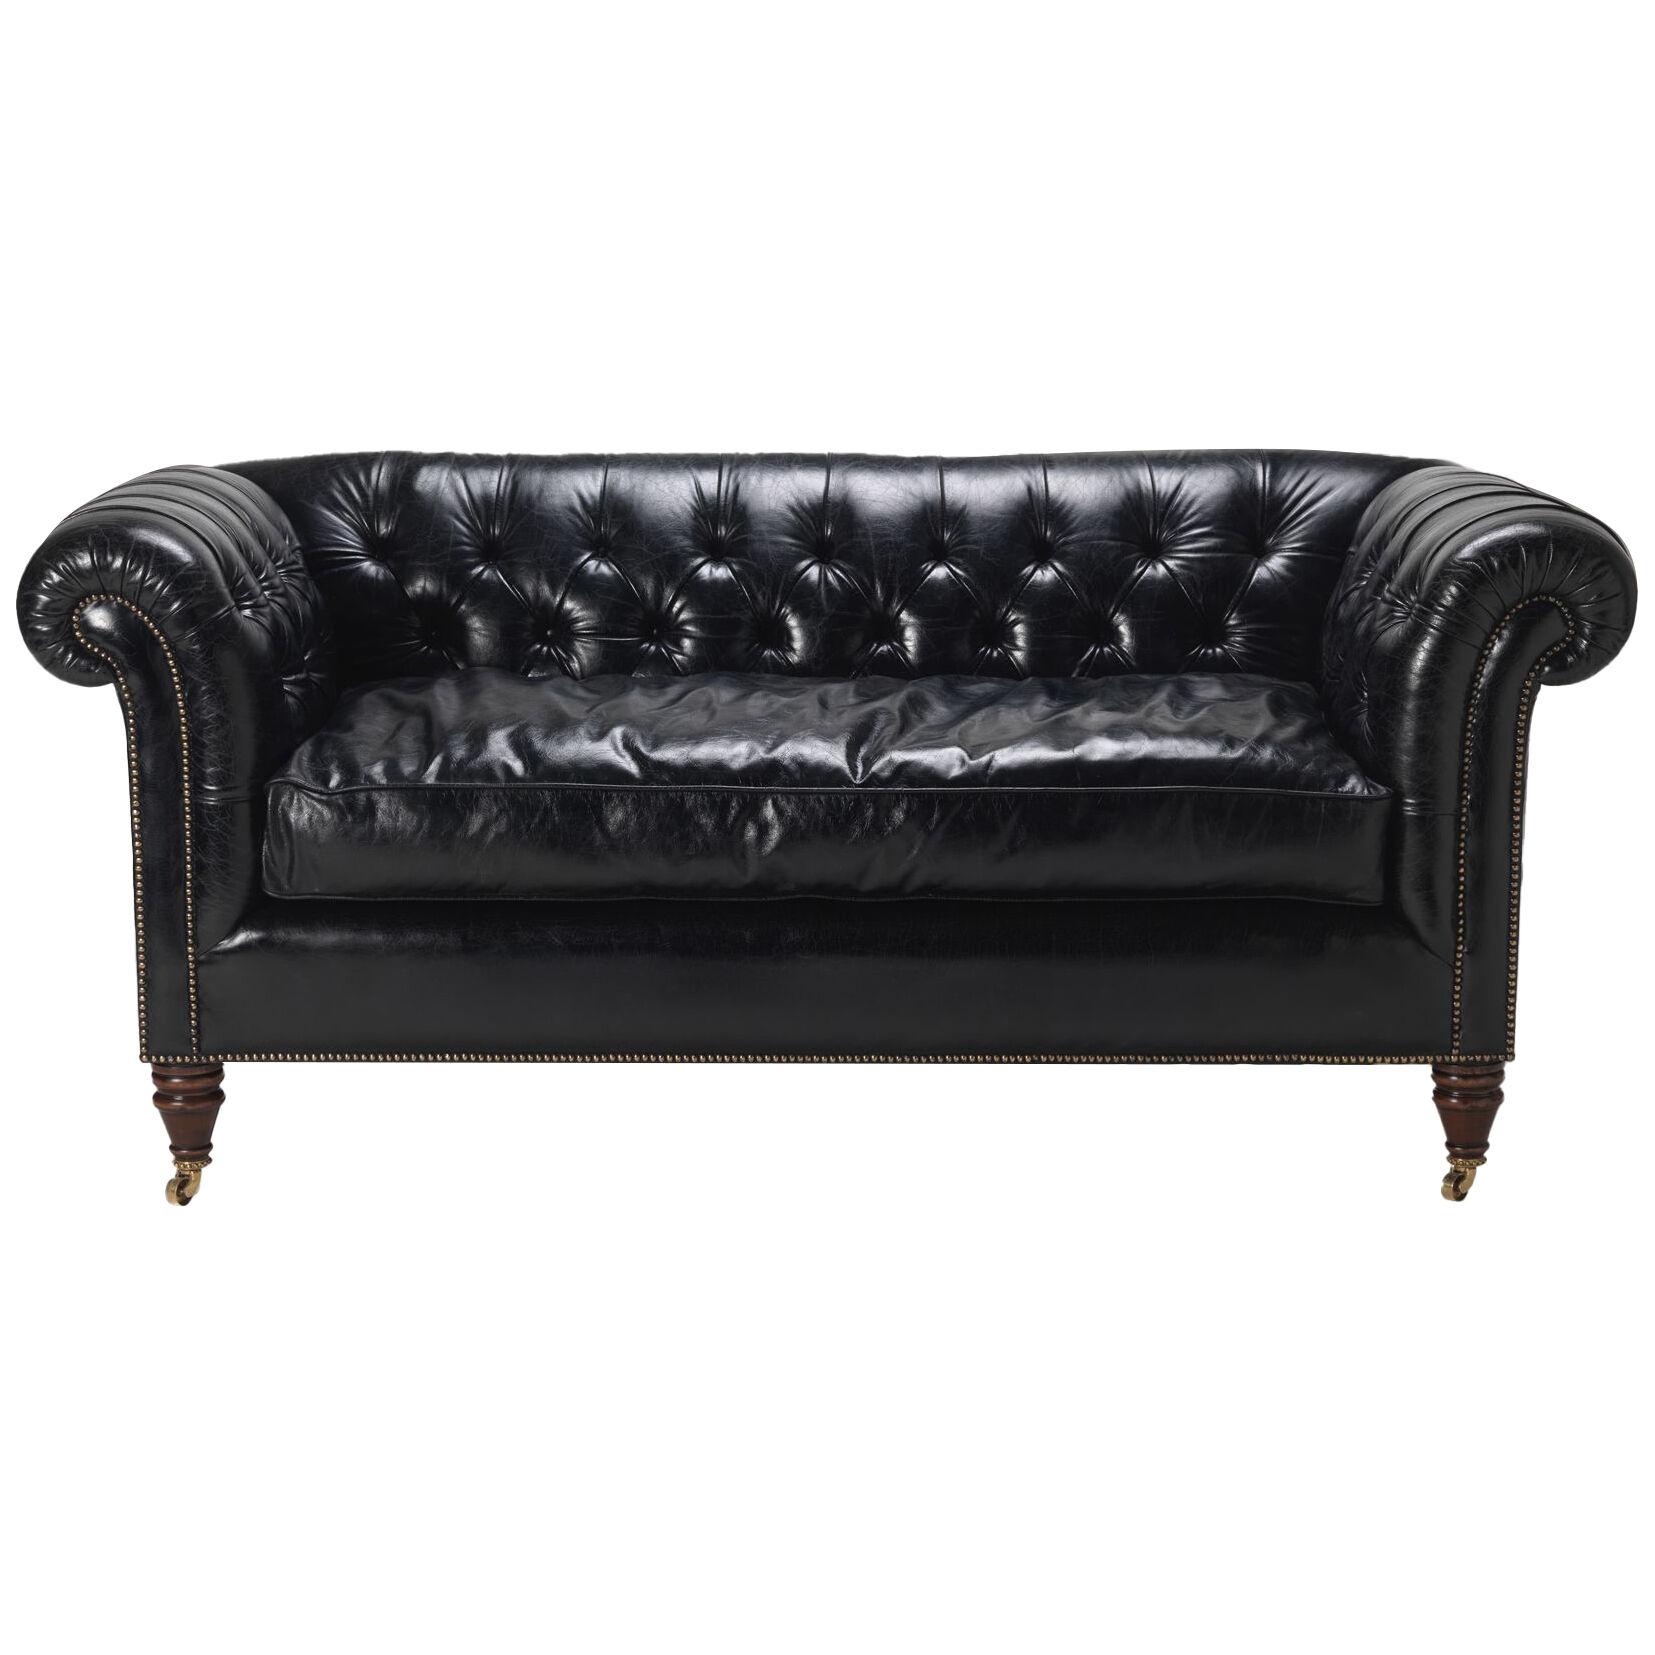 The Oswald Sofa